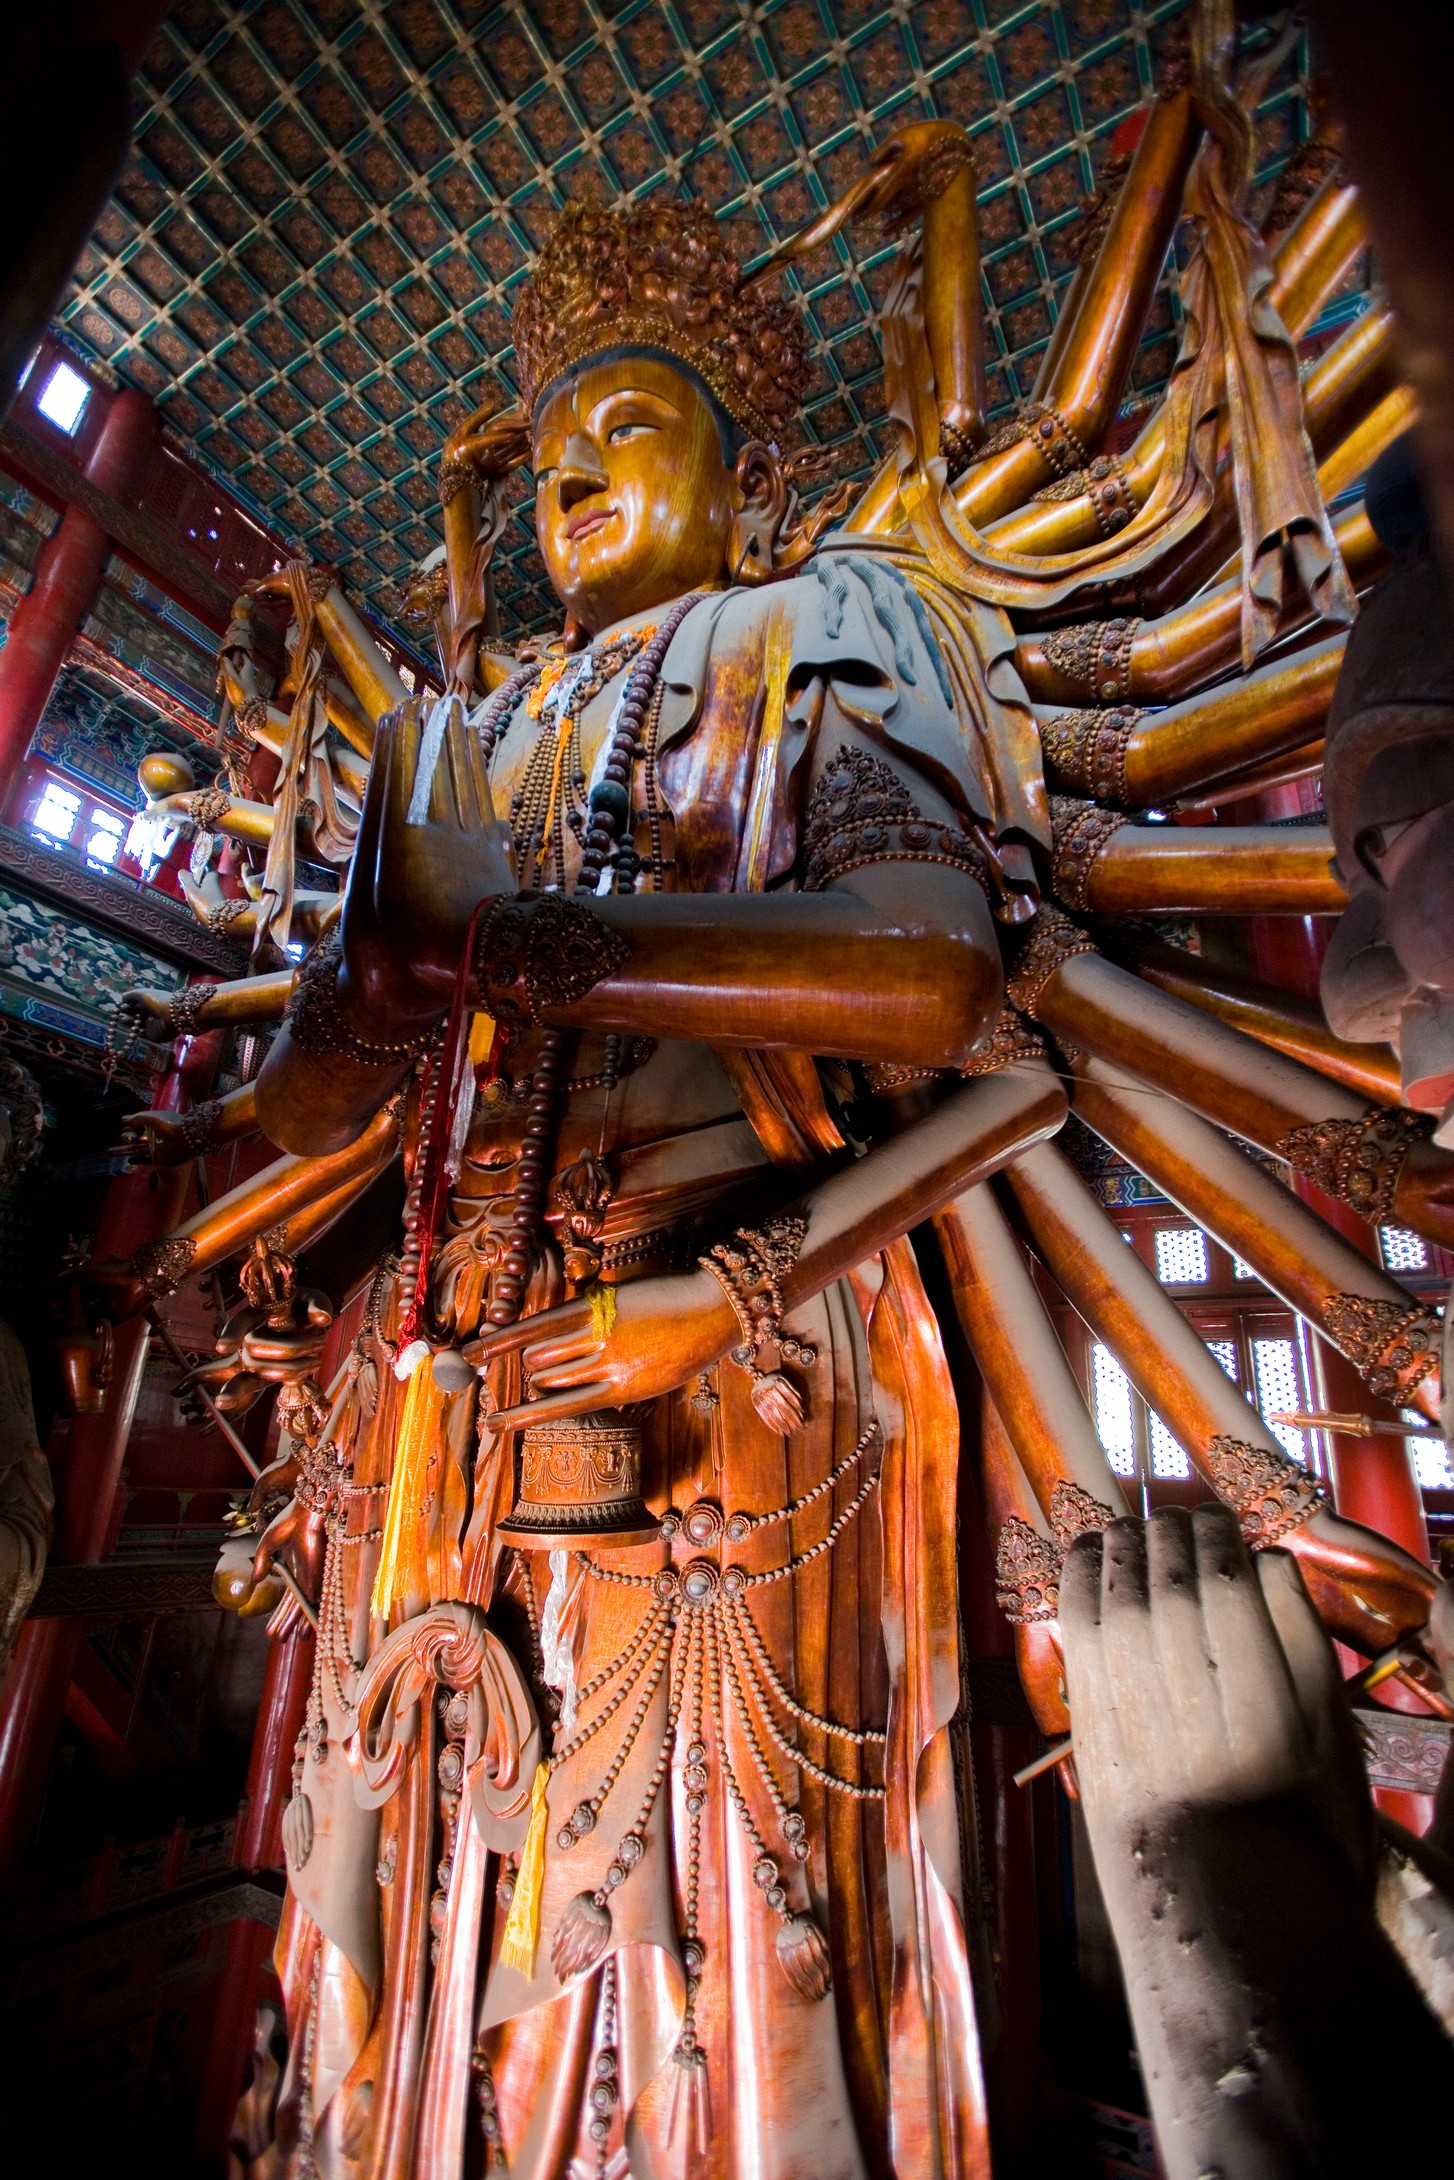 【携程攻略】香港天坛大佛景点,天坛大佛是世界上最大的露天释迦牟尼青铜坐像，也是香港的标志性景点…